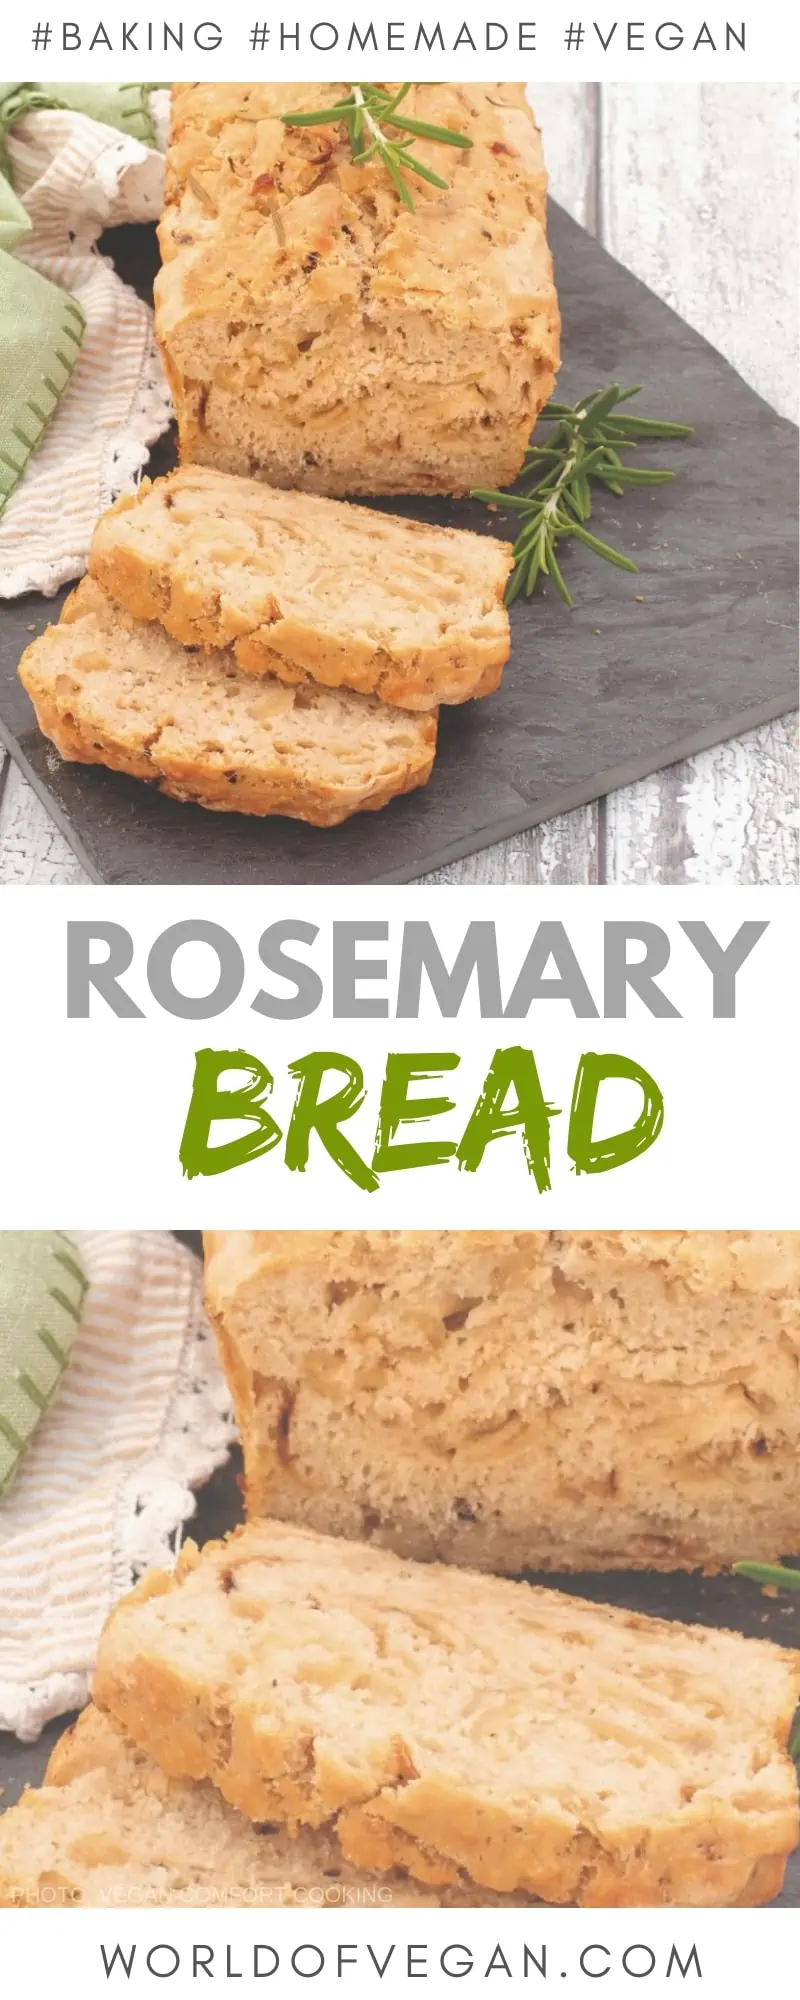 Rosemary Beer Bread Recipe | Homemade Bread | World of Vegan | #bread #rosemary #beer #homemade #baking #vegan #worldofvegan